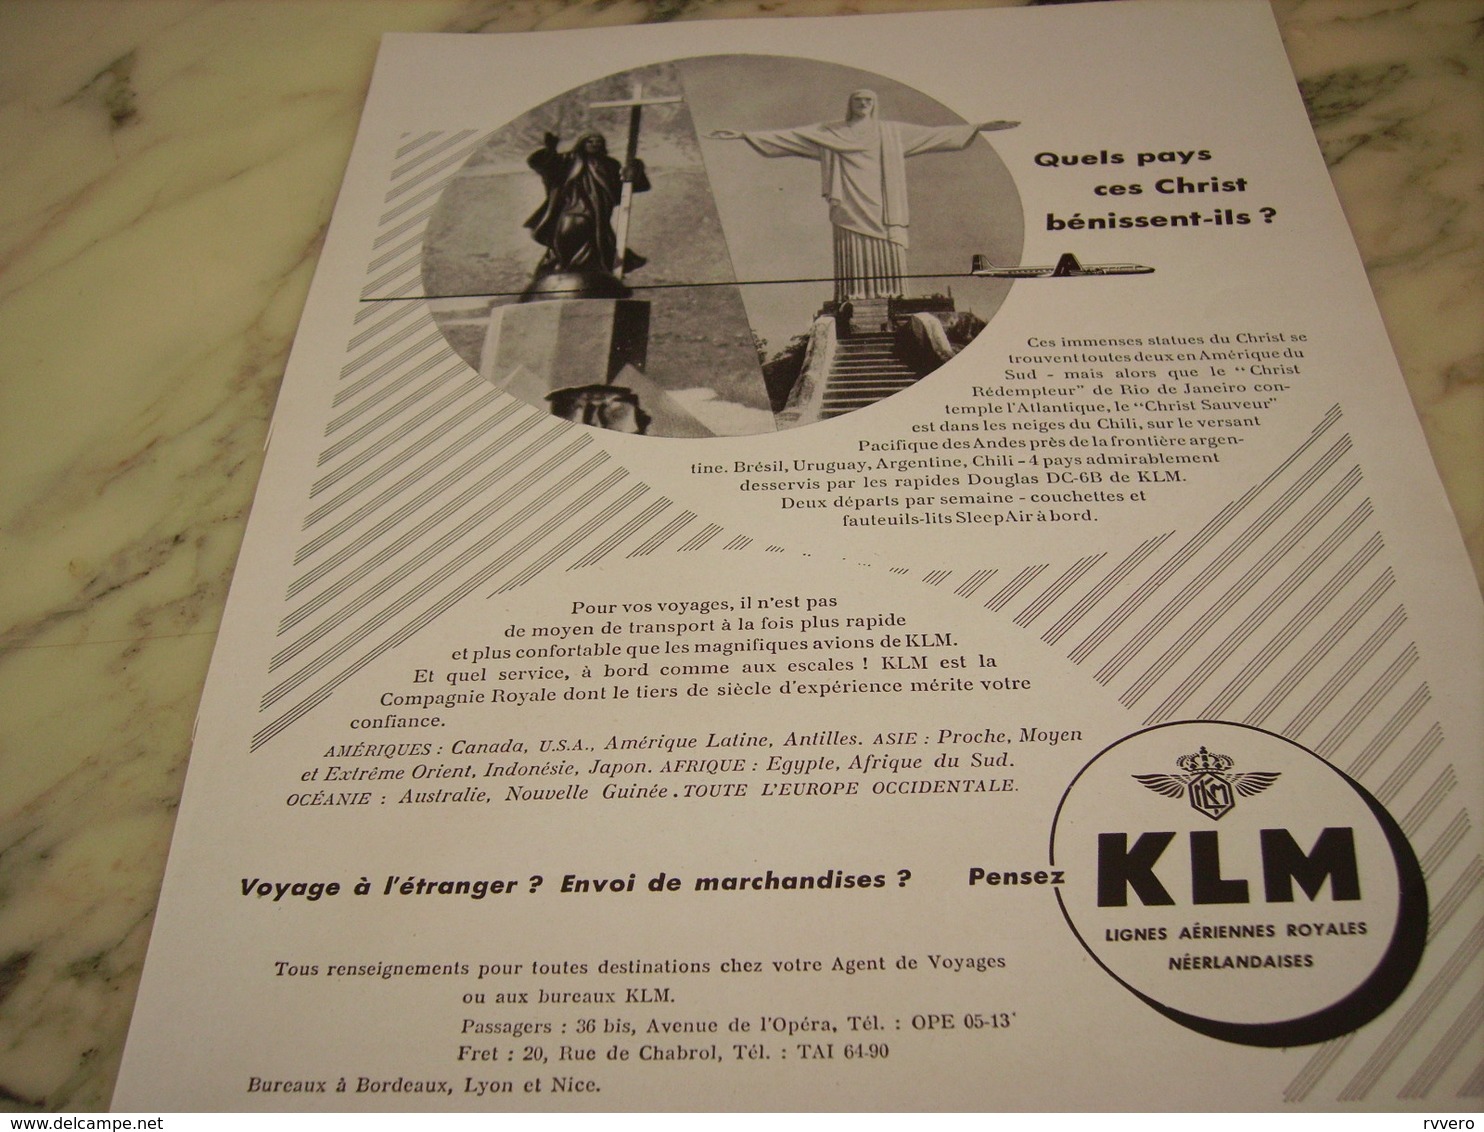 ANCIENNE PUBLICITE QUELS PAYS CES CHRIST BENISSENT IL  KLM 1953 - Publicités